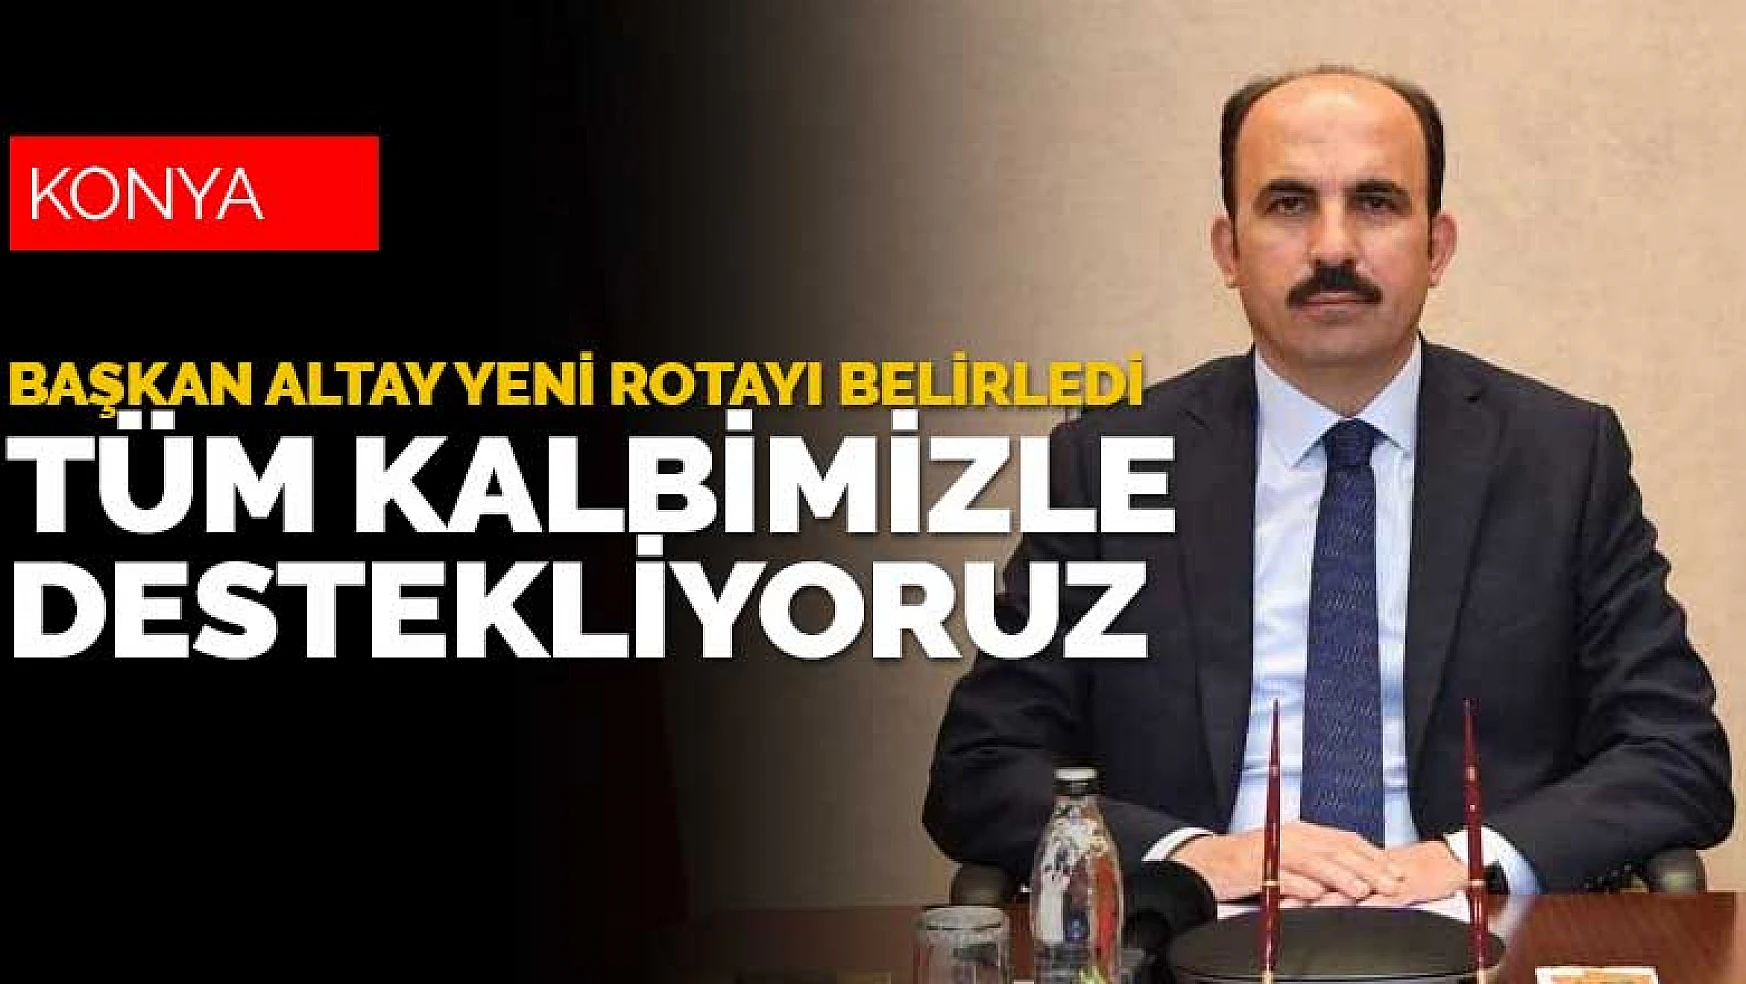 Konya Büyükşehir Belediyesi Başkanı Uğur İbrahim Altay'dan barış vurgusu